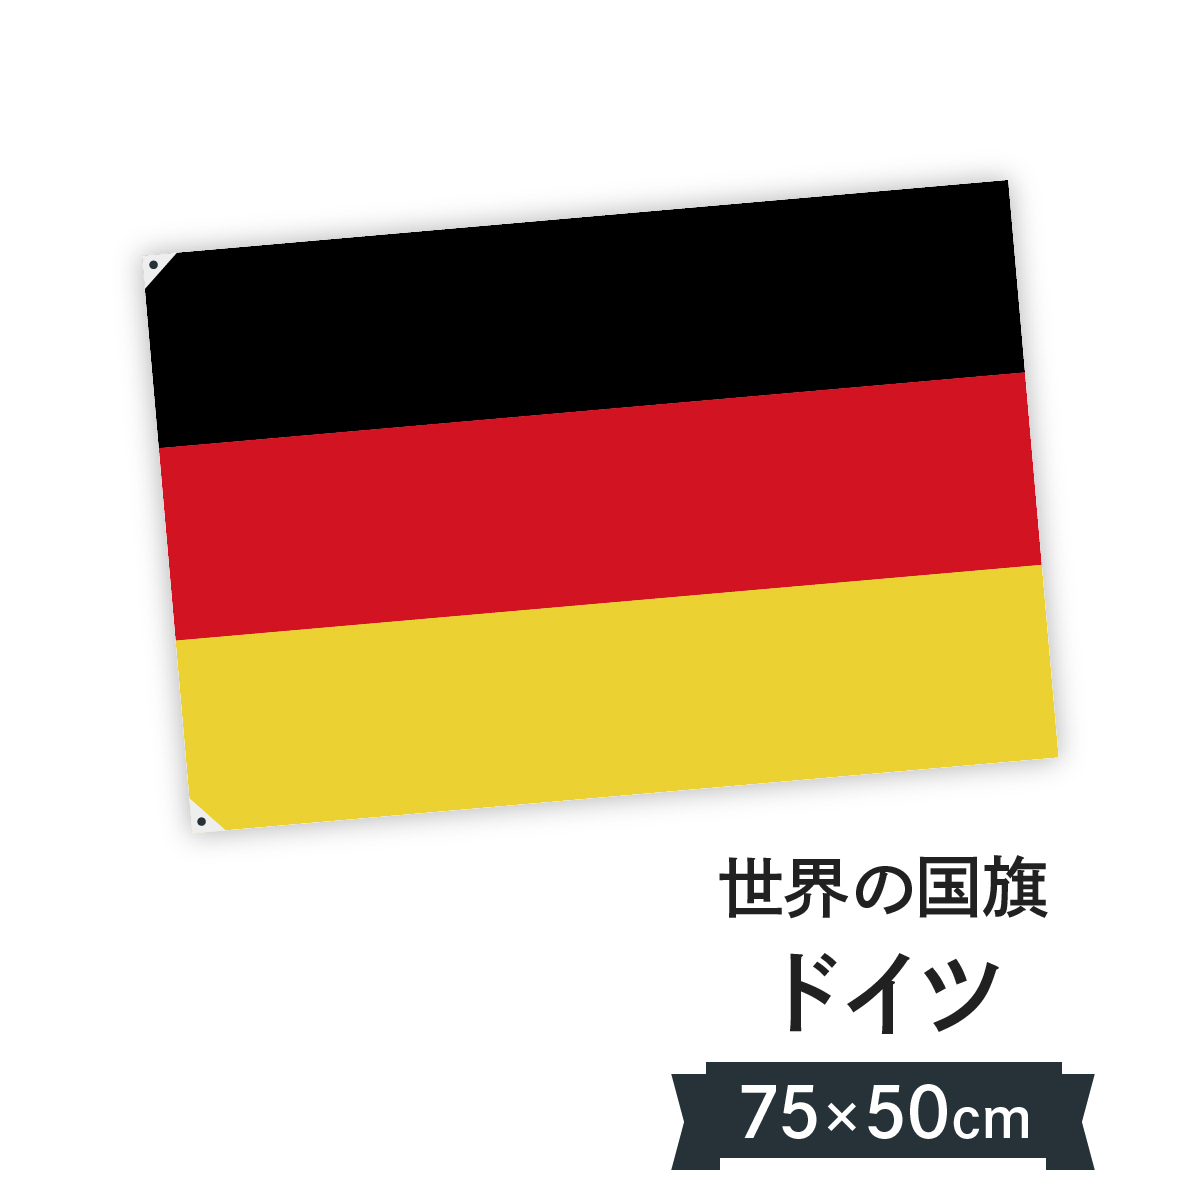 楽天市場 ドイツ連邦共和国 国旗 W75cm H50cm グッズプロ